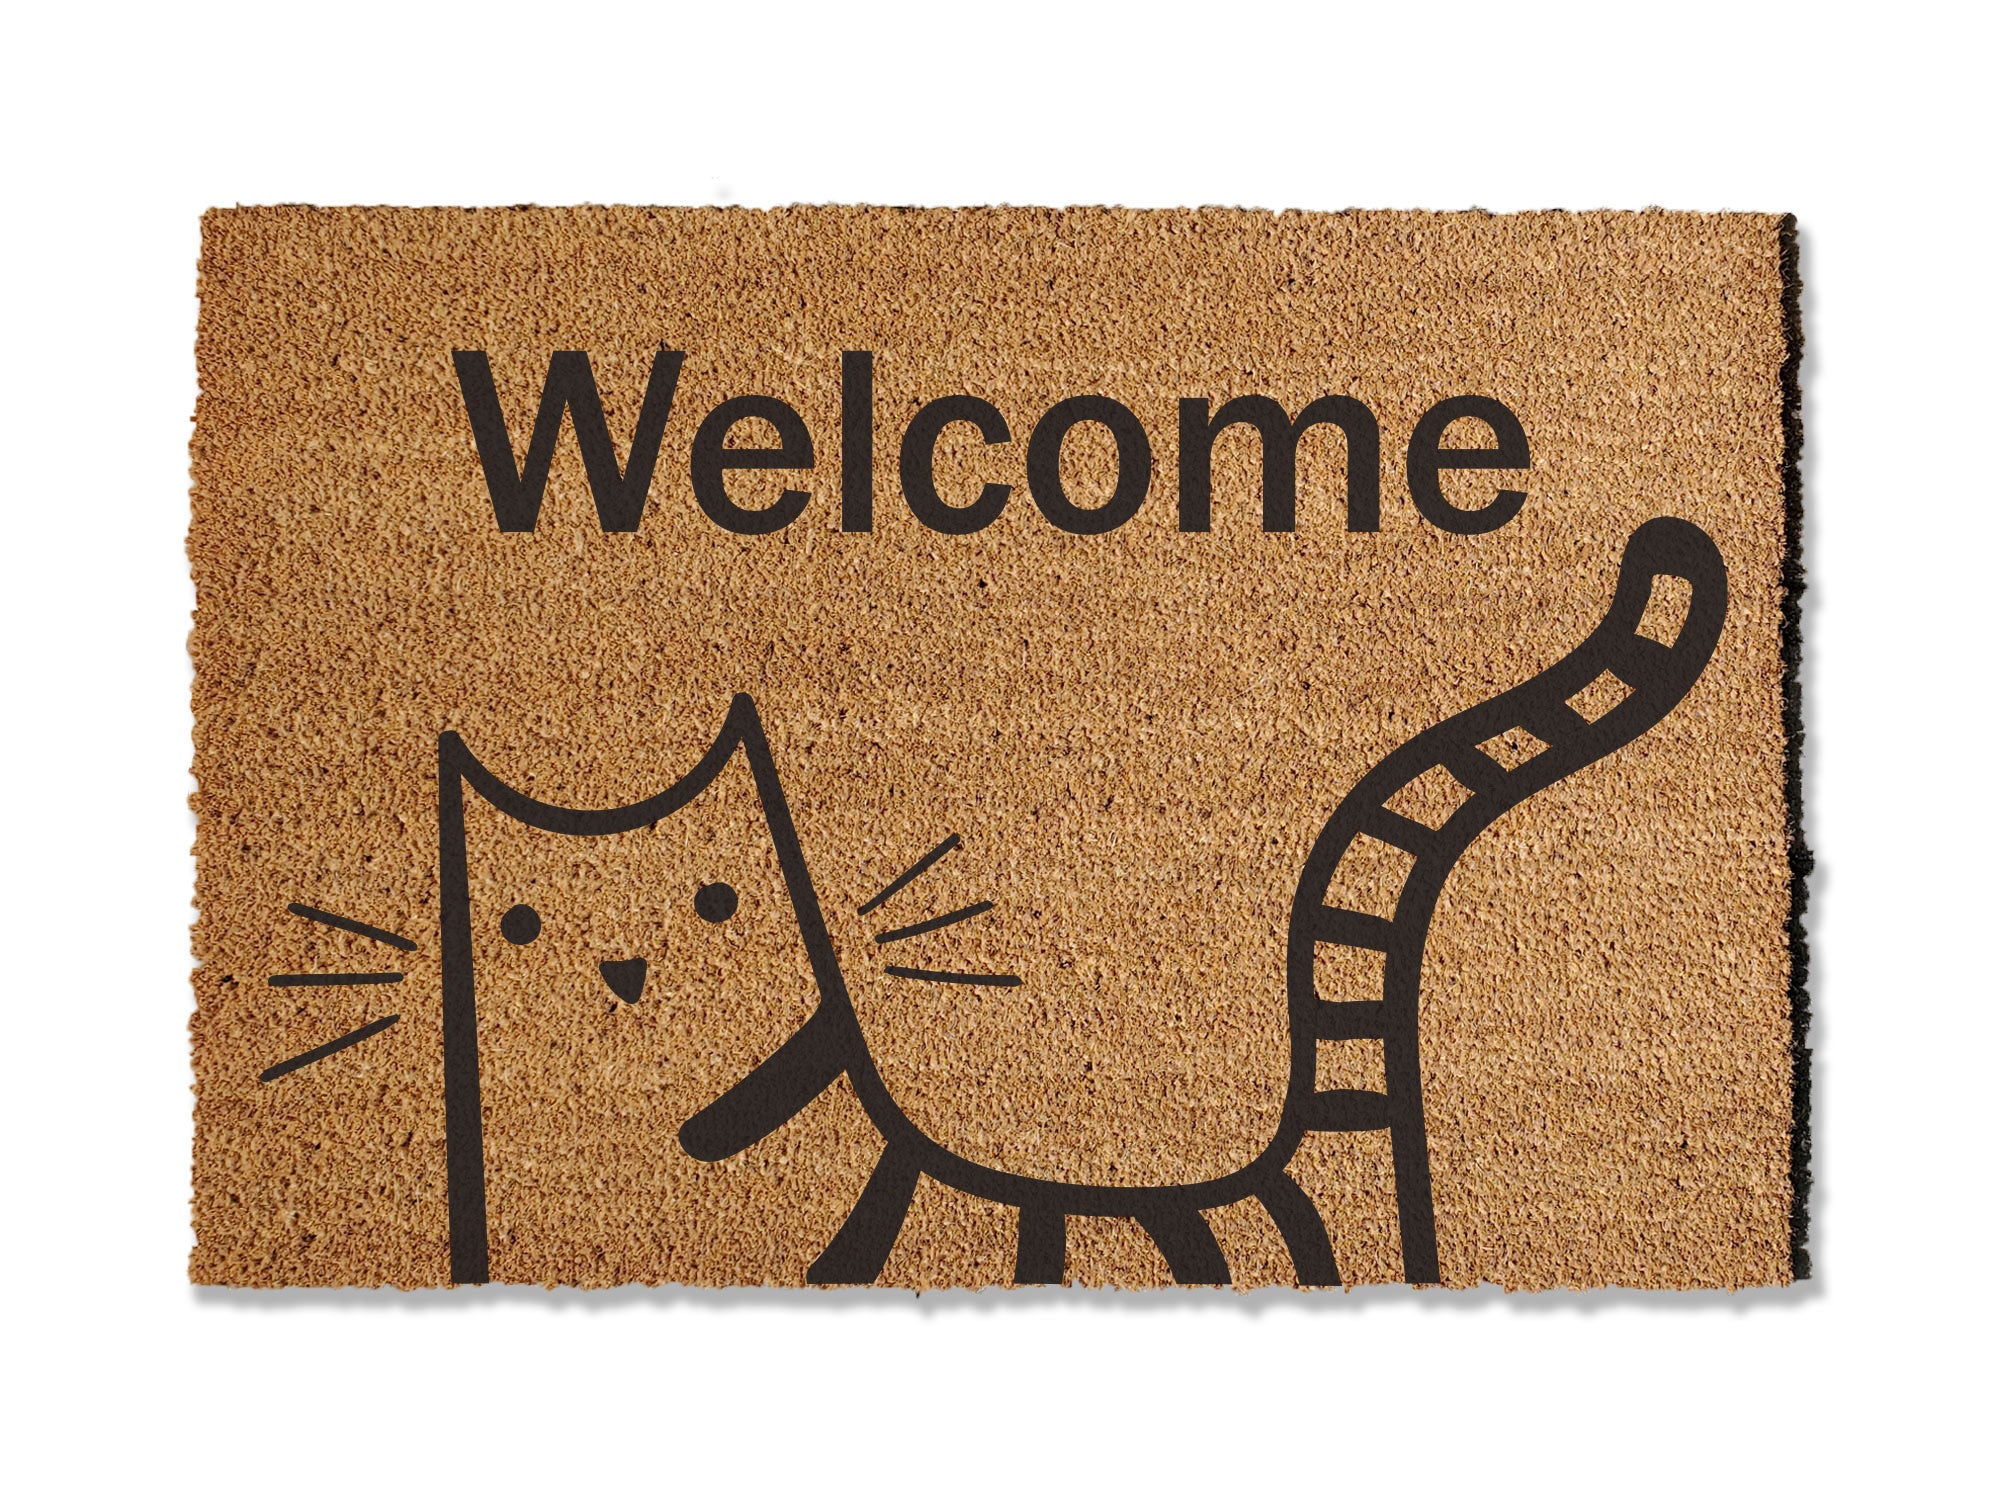 Cat Welcome Doormat, Feline Friend Doormat